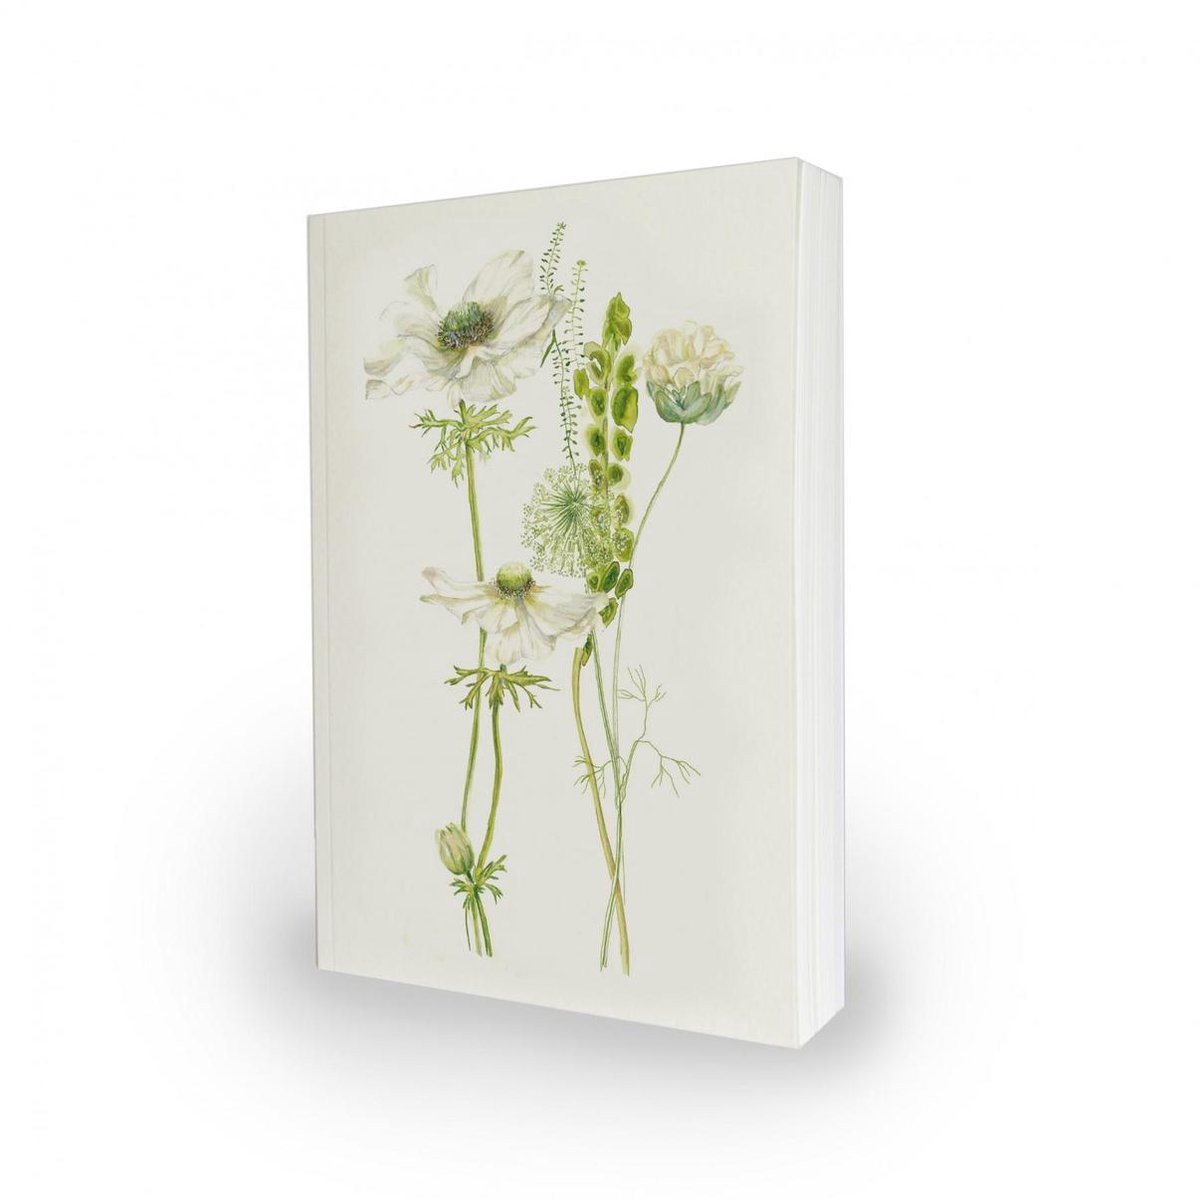 Notietieboek - Notebook - Veldbloemen - + gratis wenskaart Moniek Peek